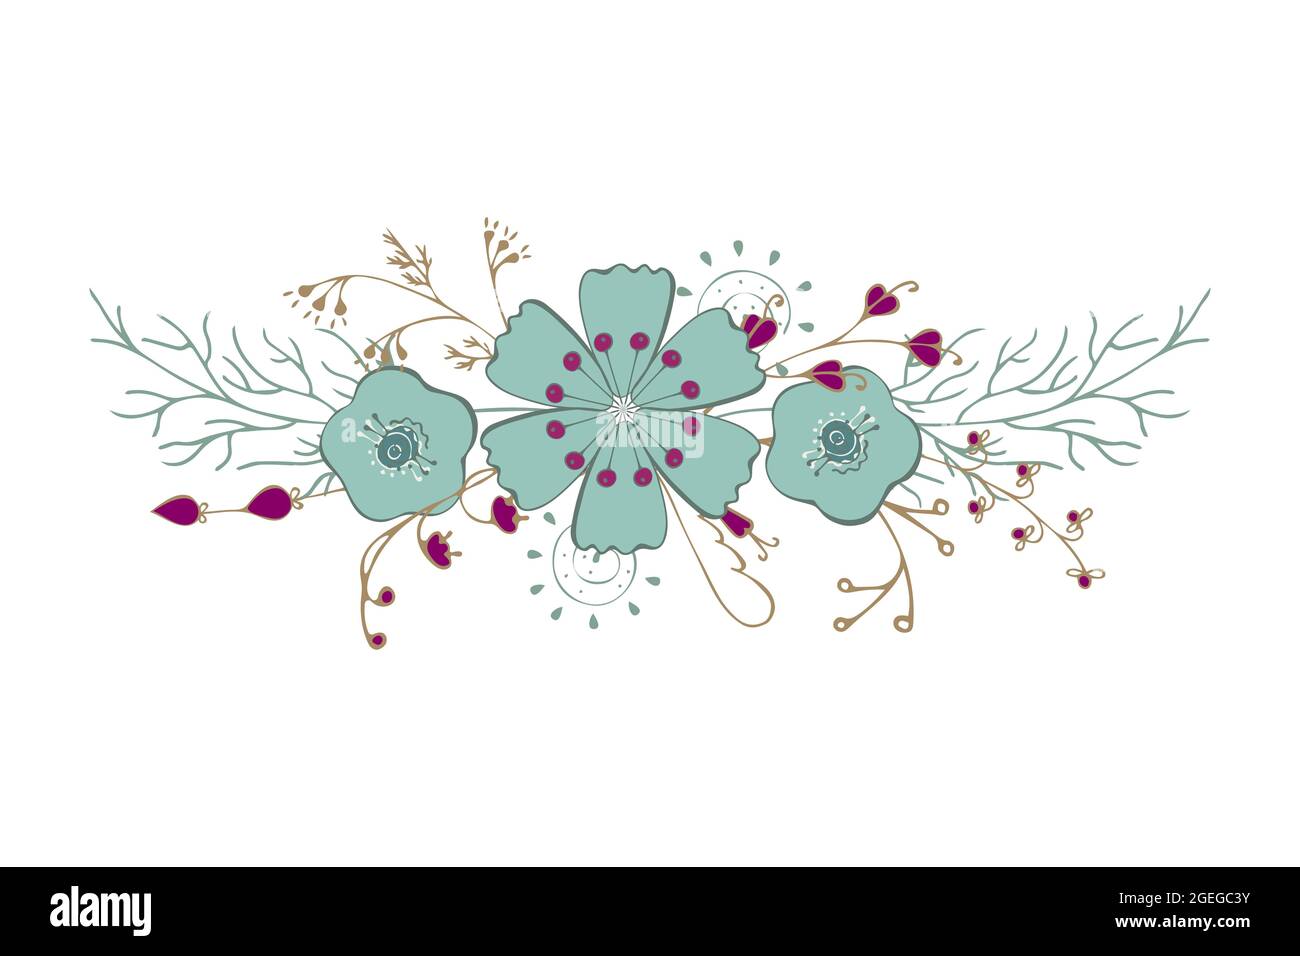 Ornament Blumen Zen Kunst kritzeln schöne zarte Blumen Blätter Zweige Handzeichnung, isoliert, weißer Hintergrund, Element für Ihr Design, für Urlaub Grußkarten. Vektorgrafik Stock Vektor